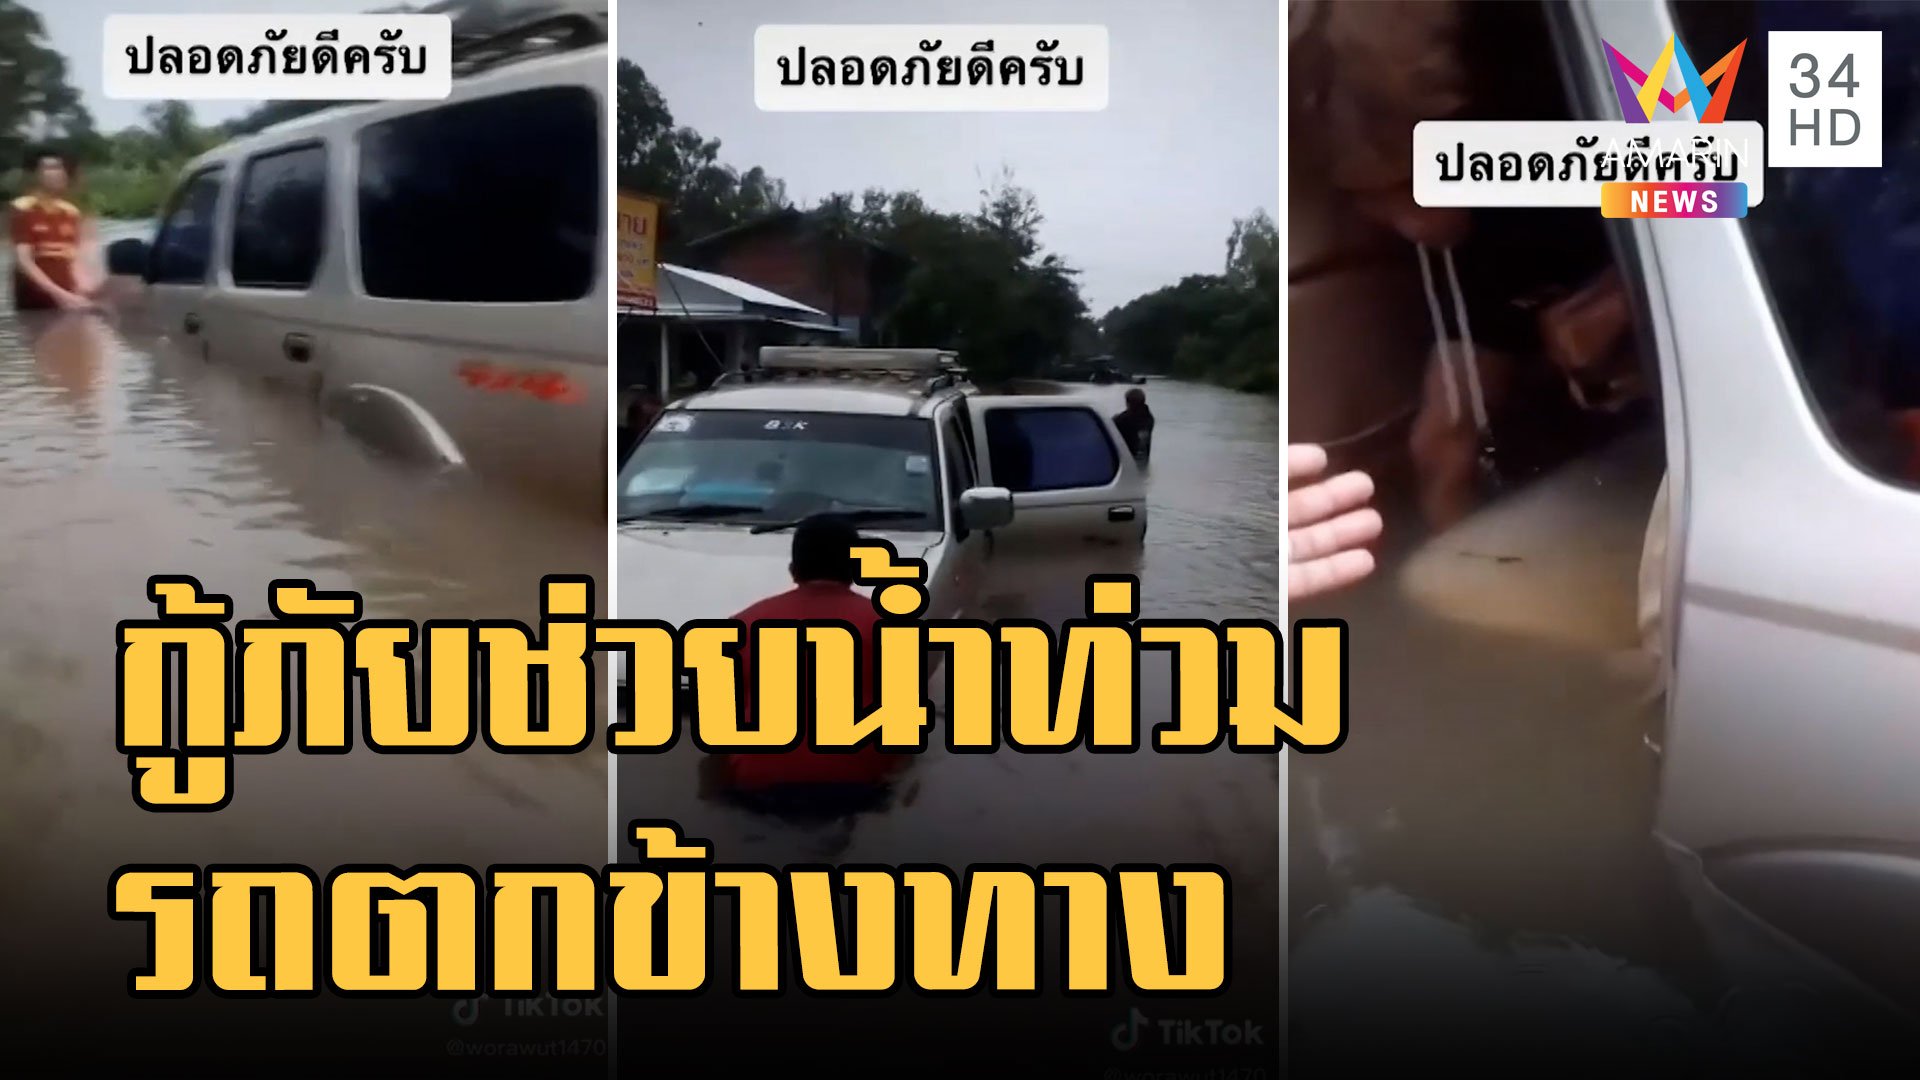 กู้ภัยไปช่วยน้ำท่วมพลาดรถตกข้างทาง ชาวบ้านเอารถไถมาช่วย | ข่าวเที่ยงอมรินทร์ | 29 ก.ย. 65 | AMARIN TVHD34